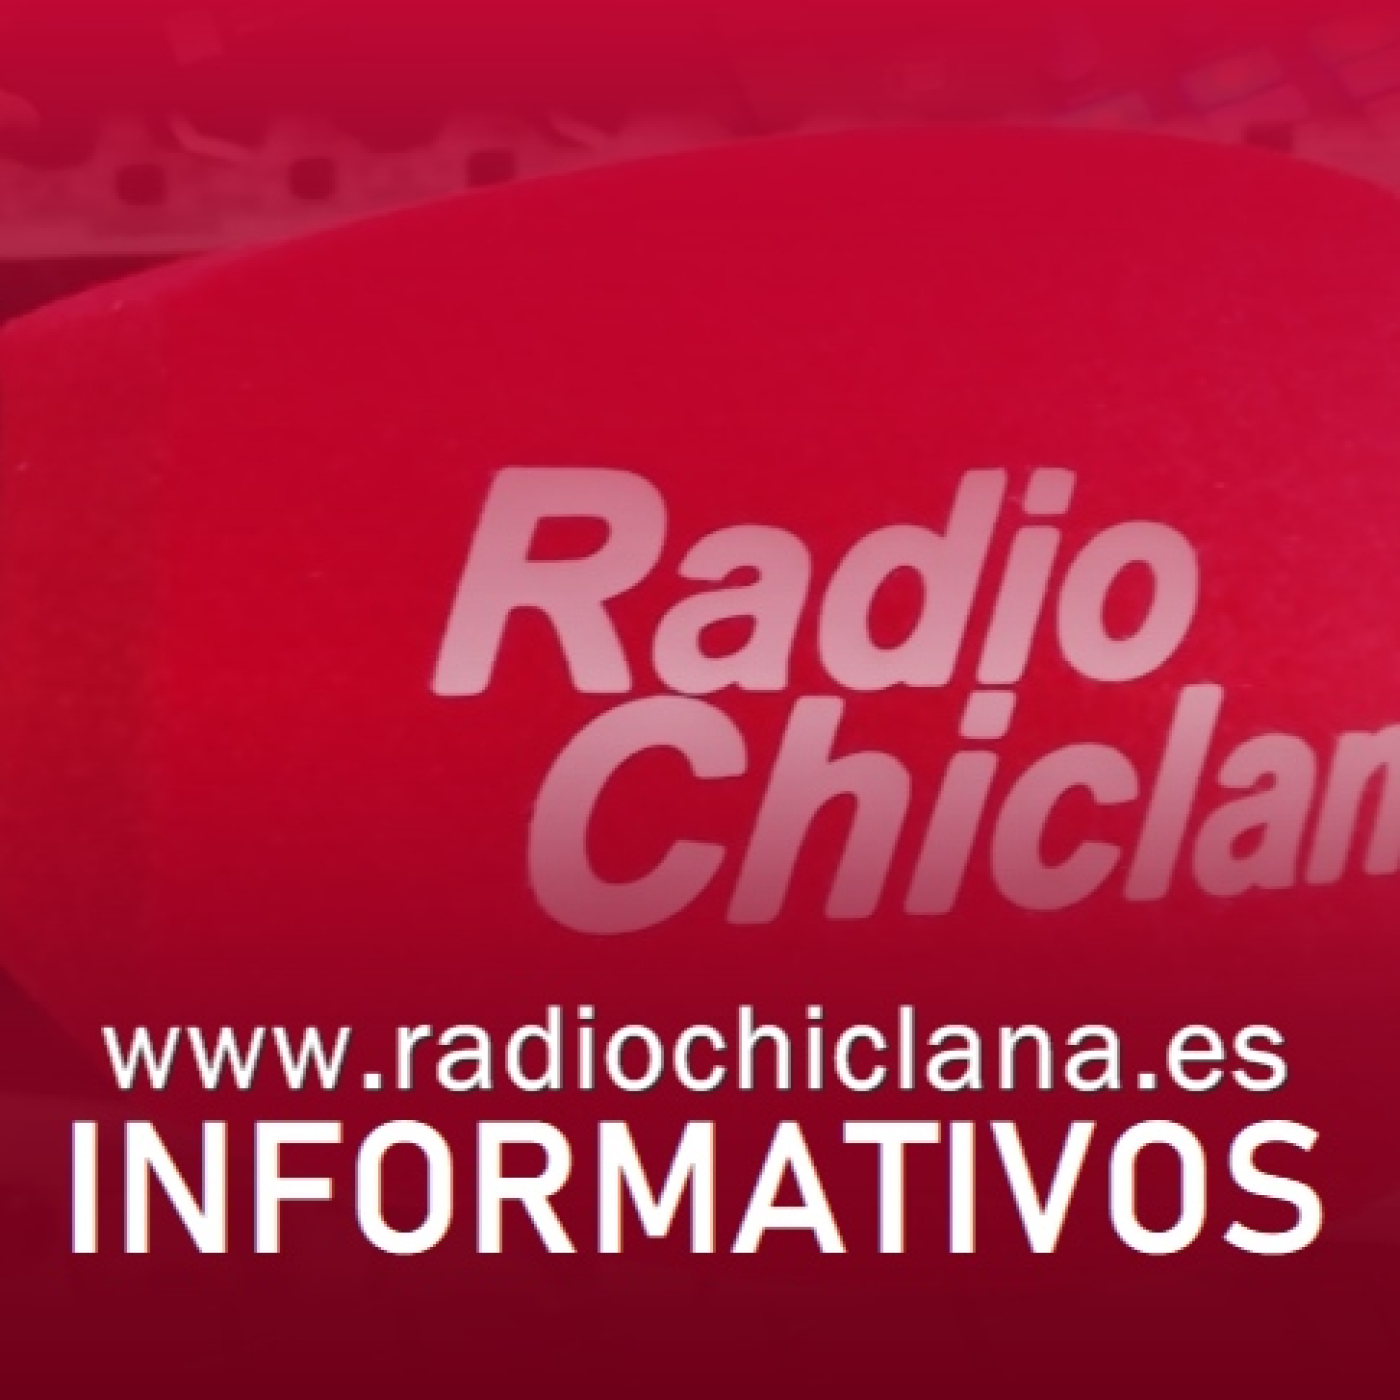 Informativos de Radio Chiclana